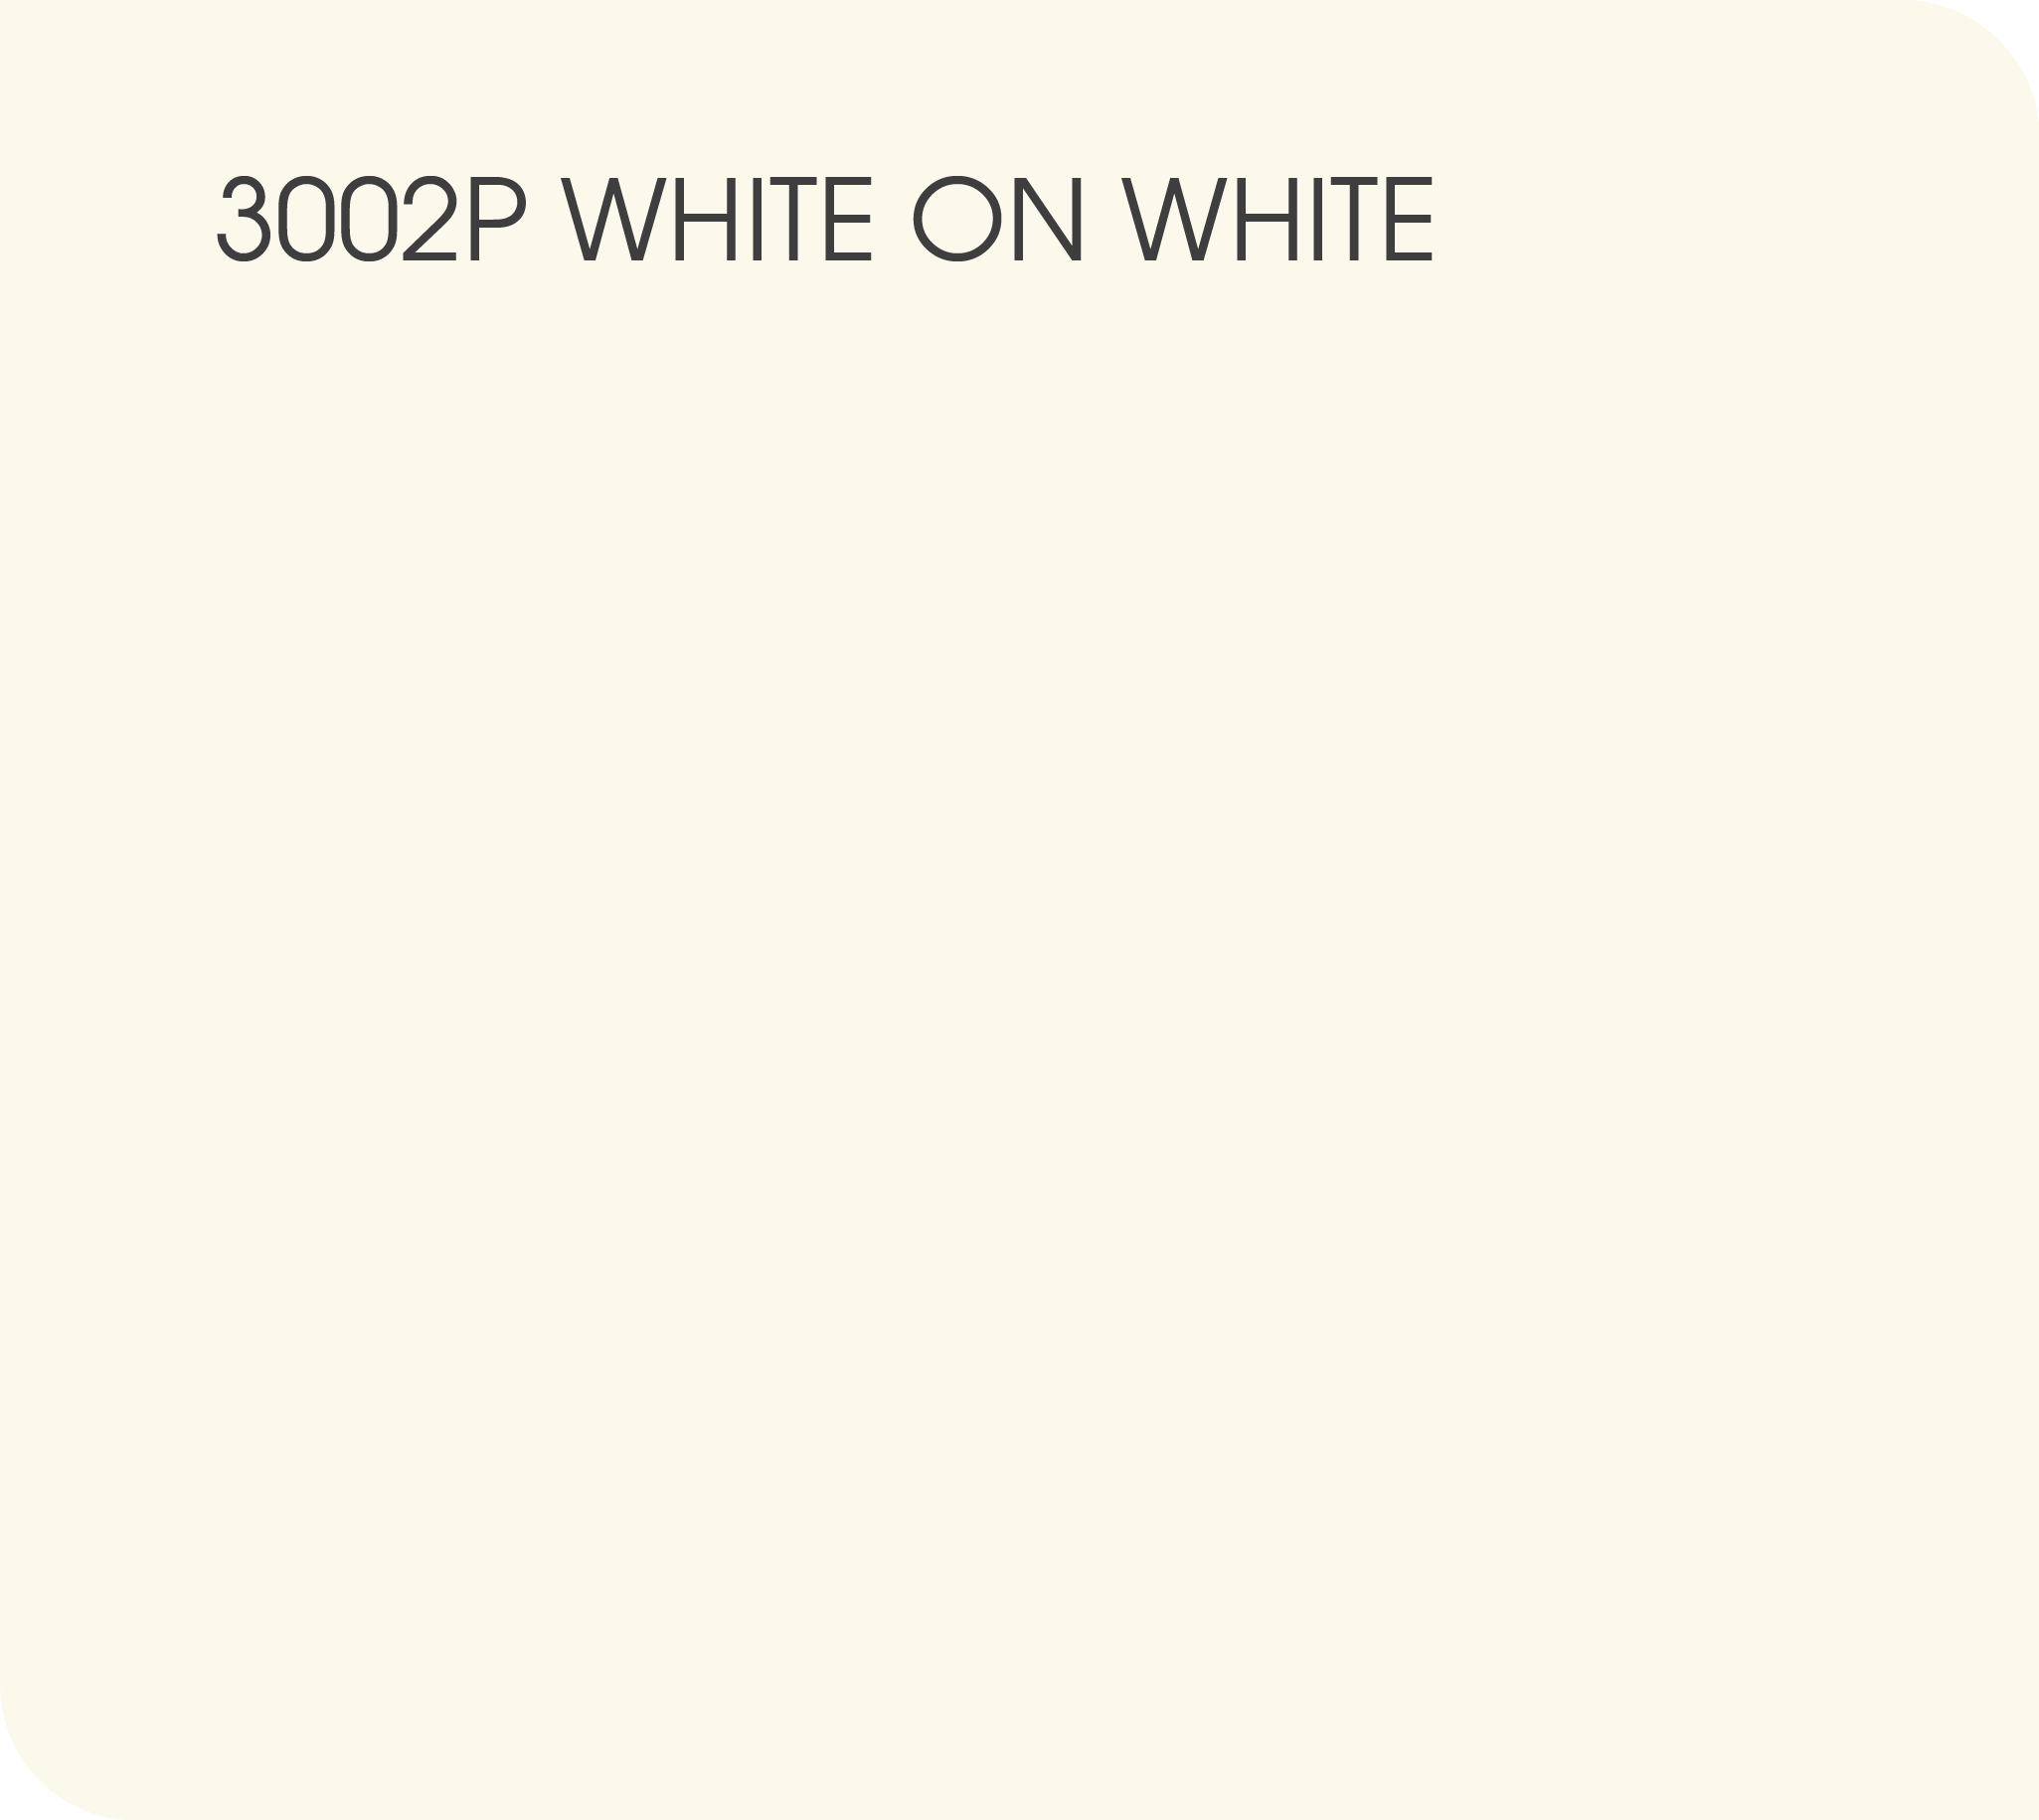 White on White